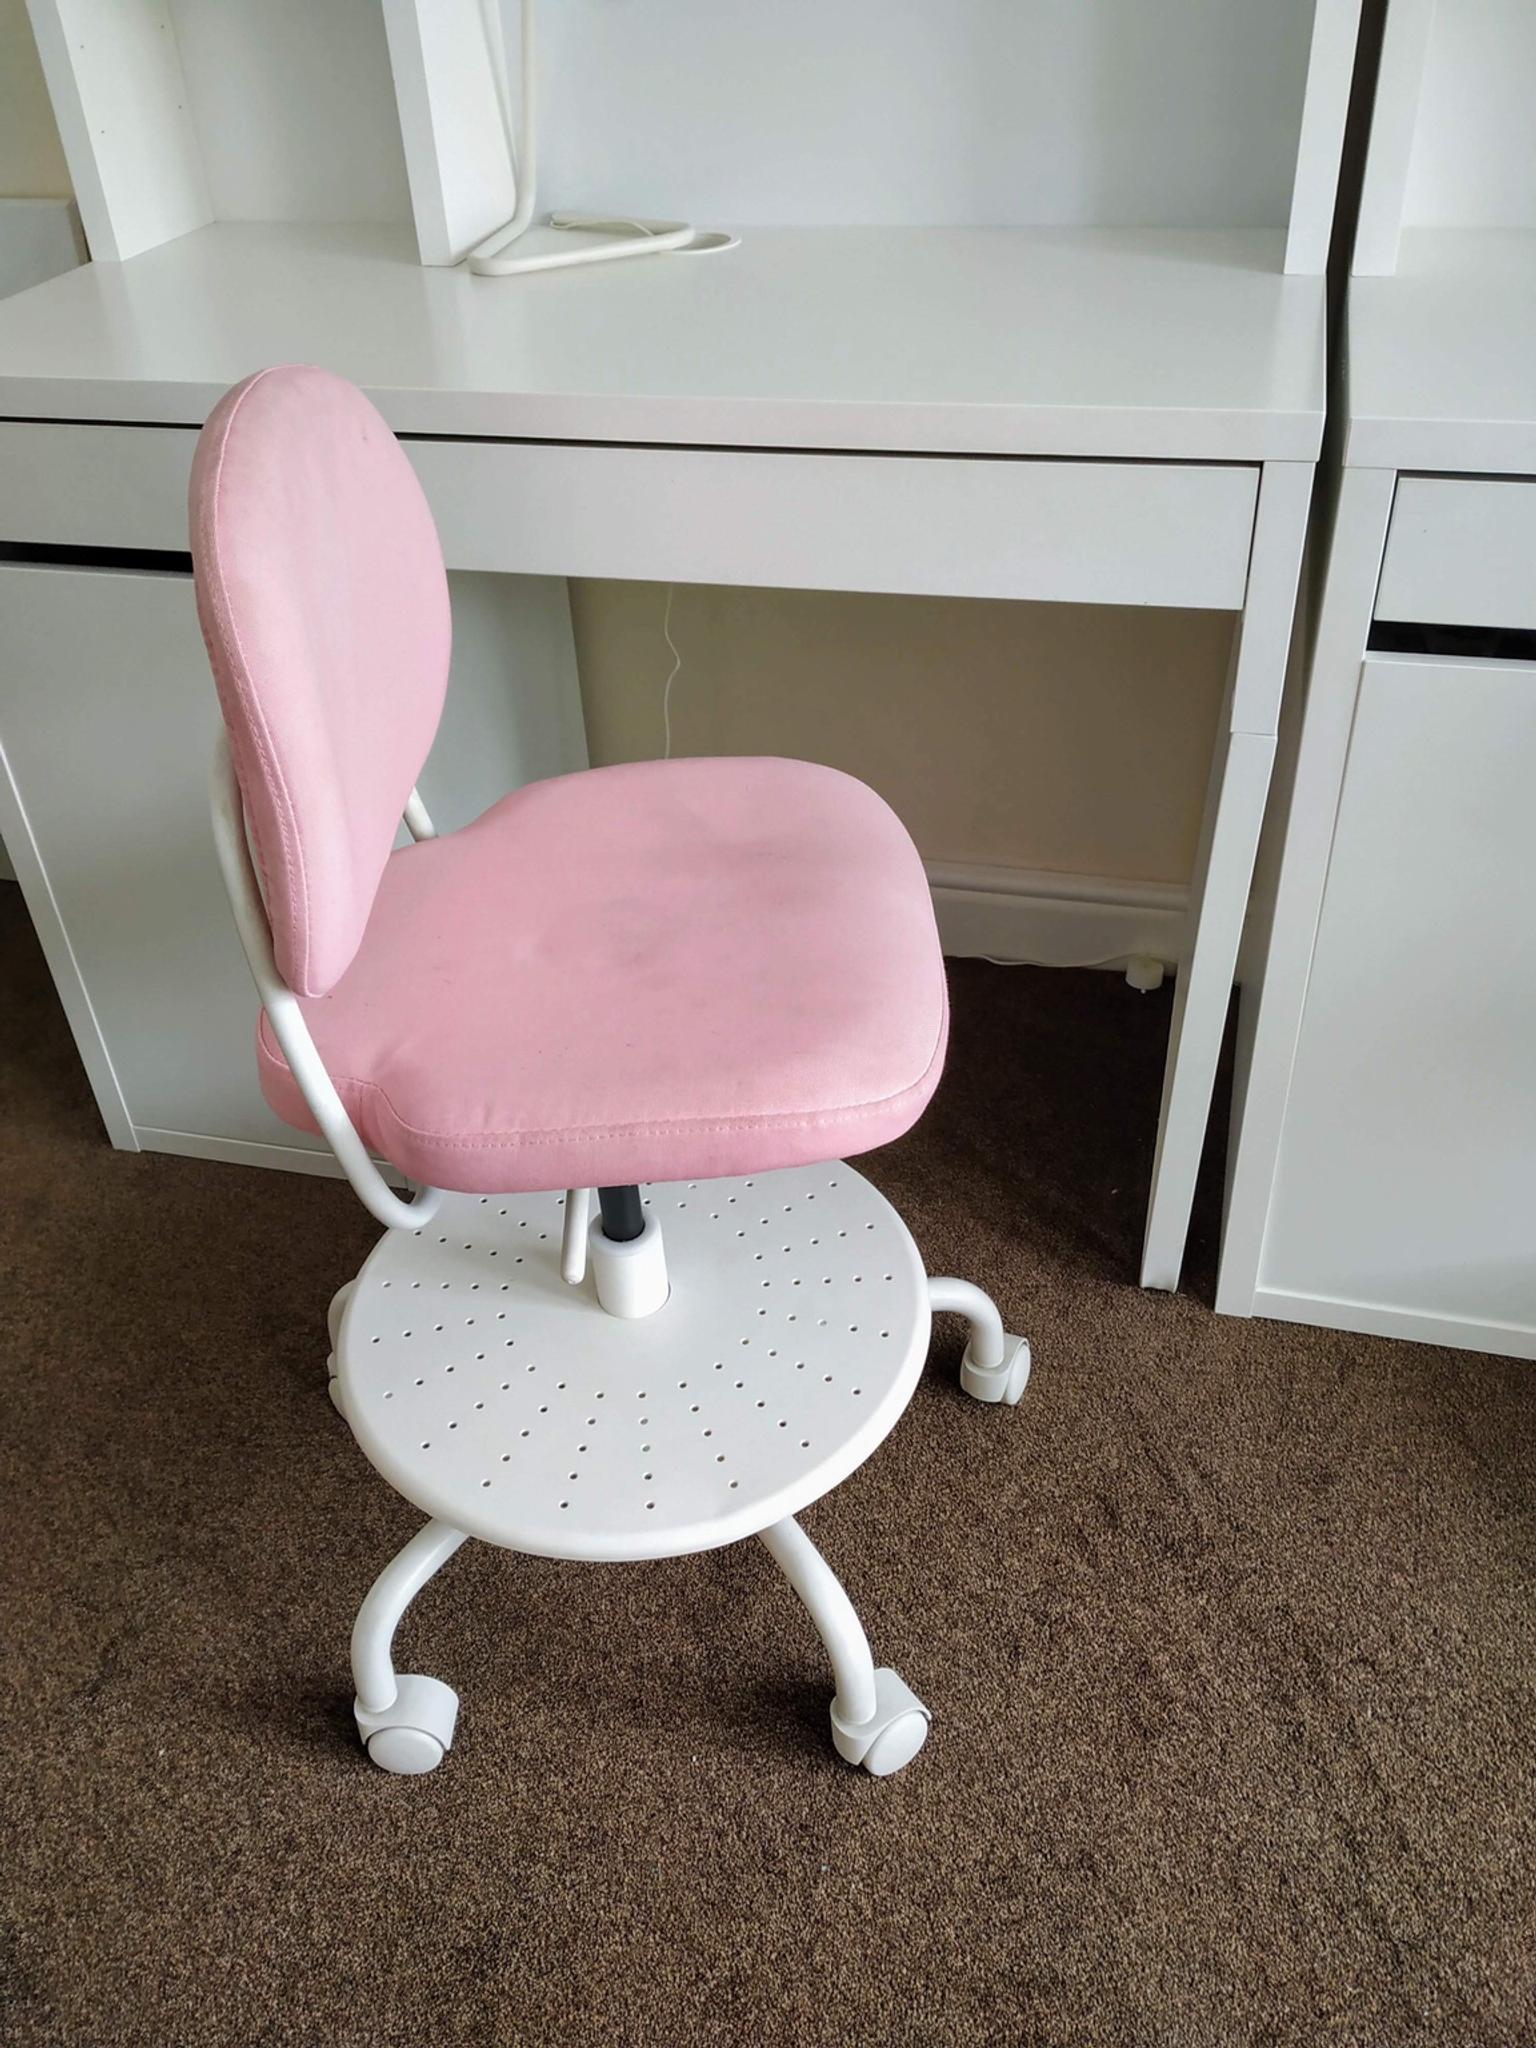 vimund children's desk chair